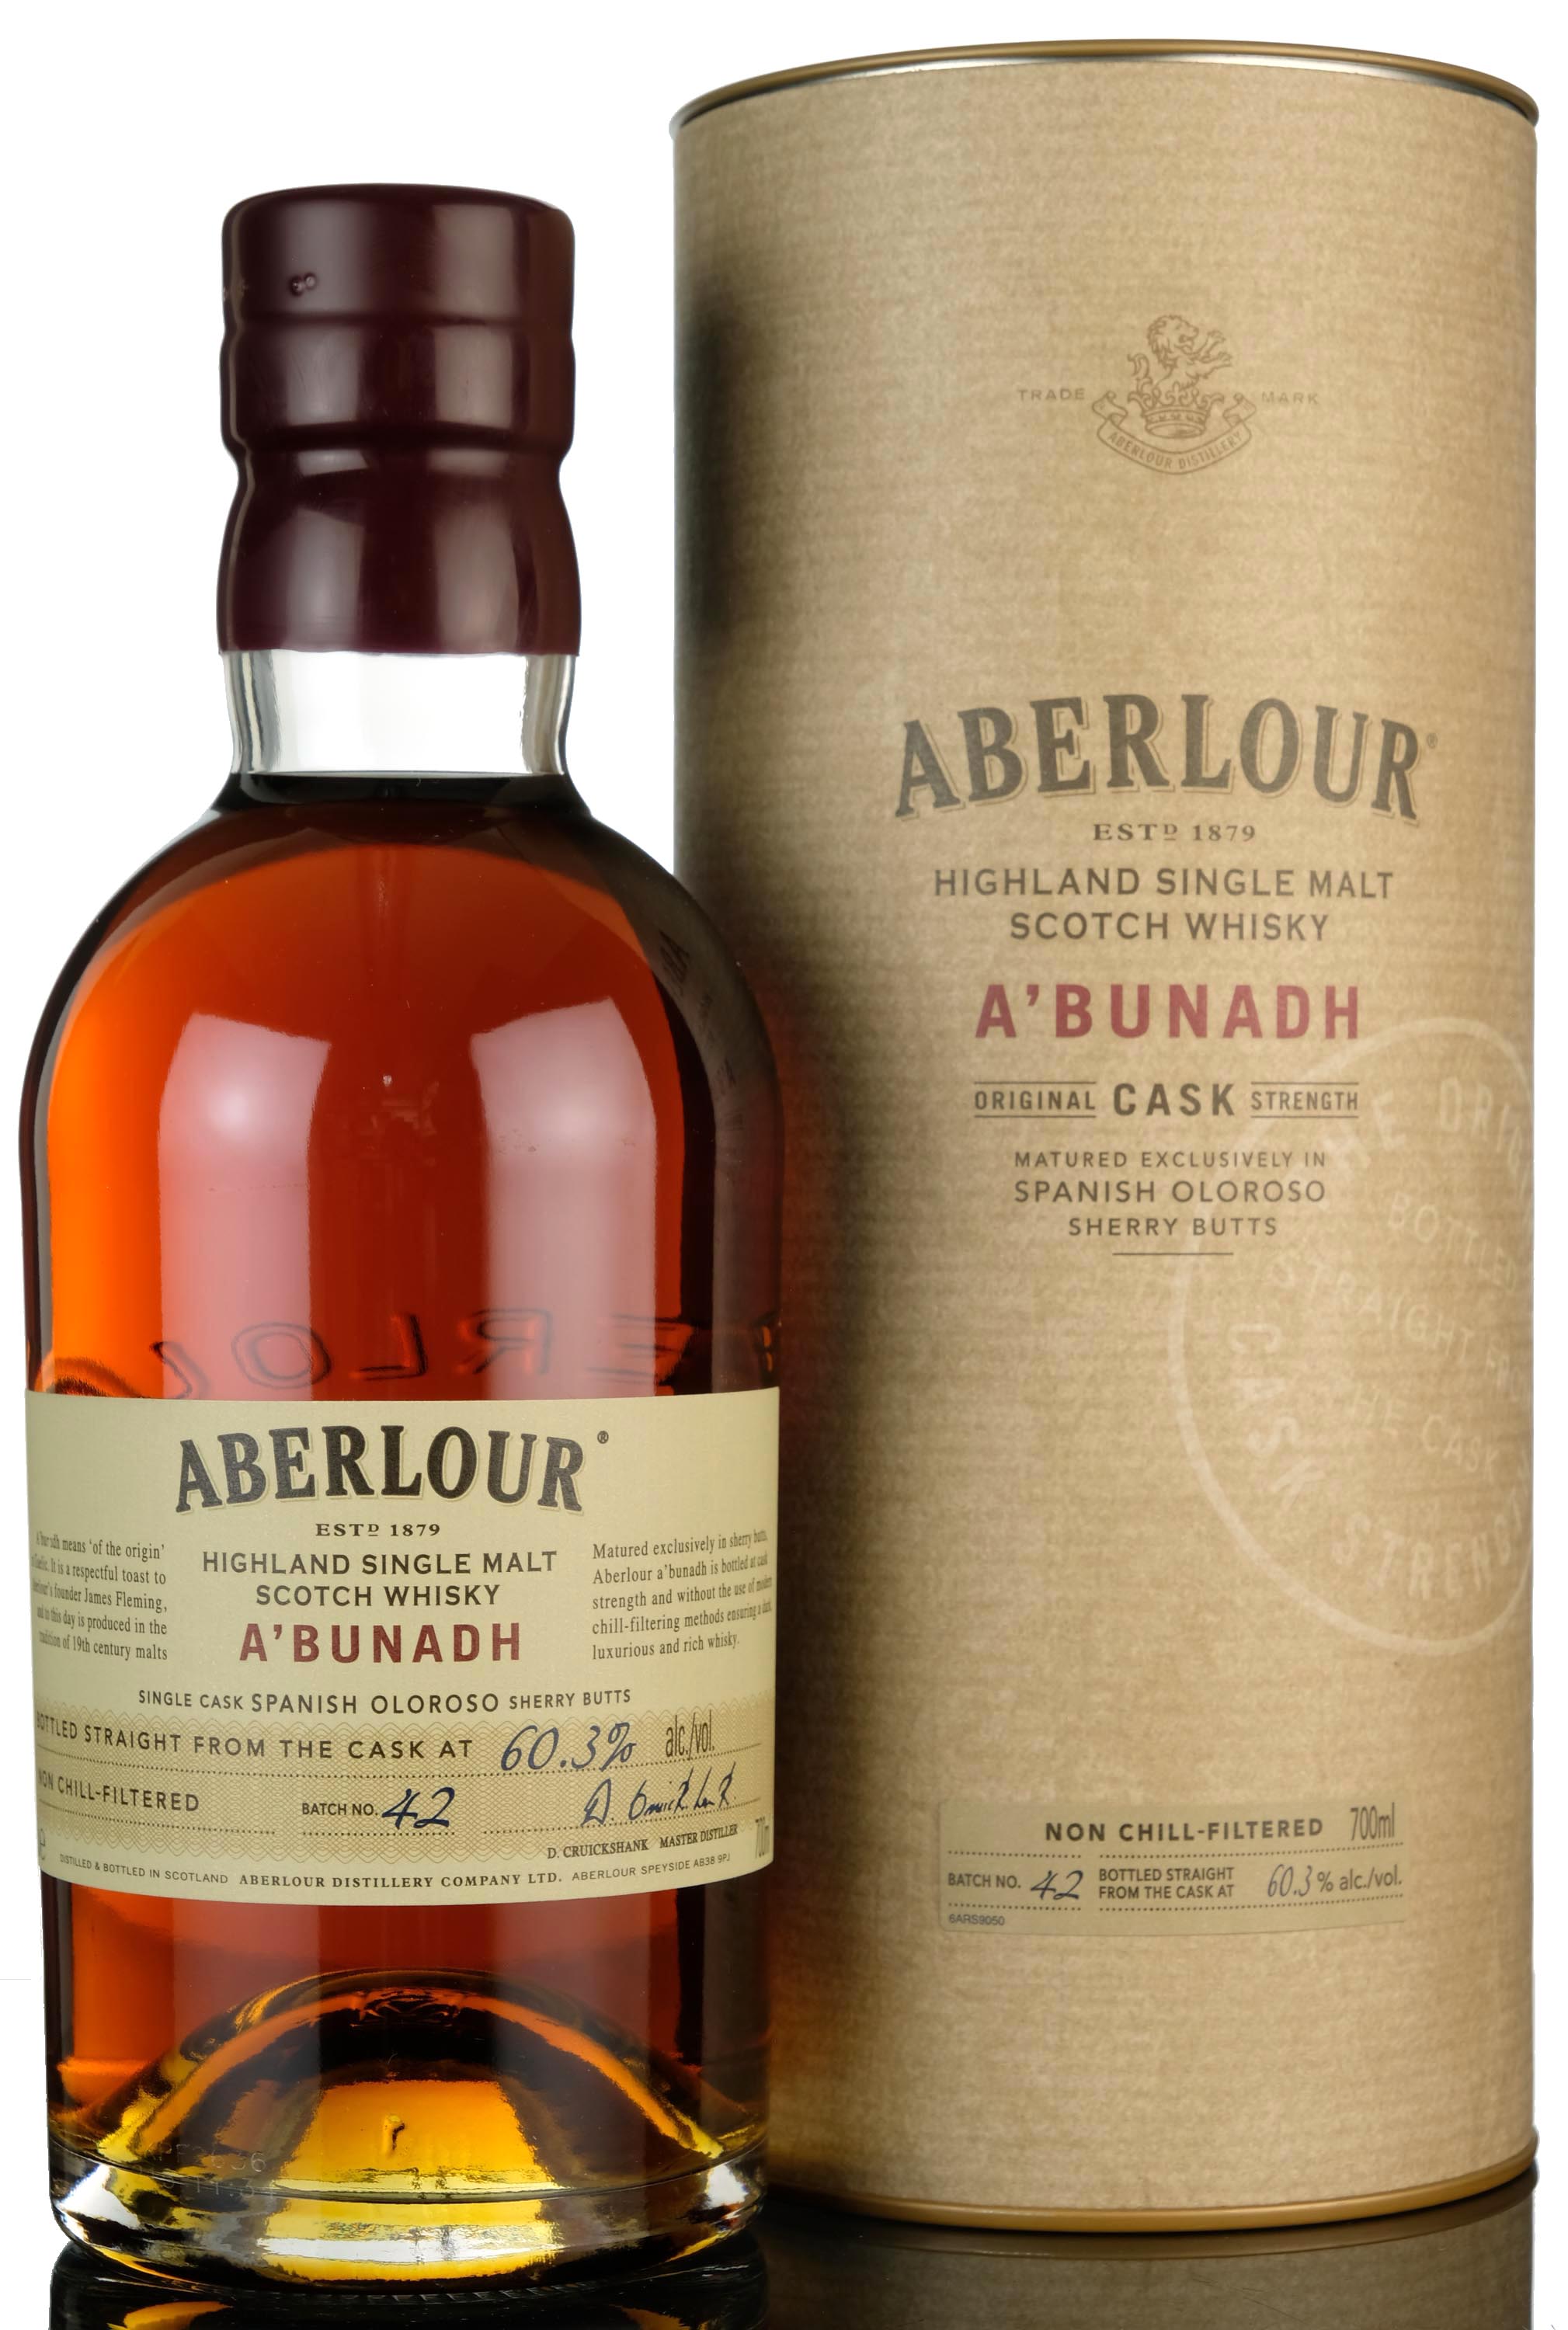 Aberlour Abunadh - Batch 42